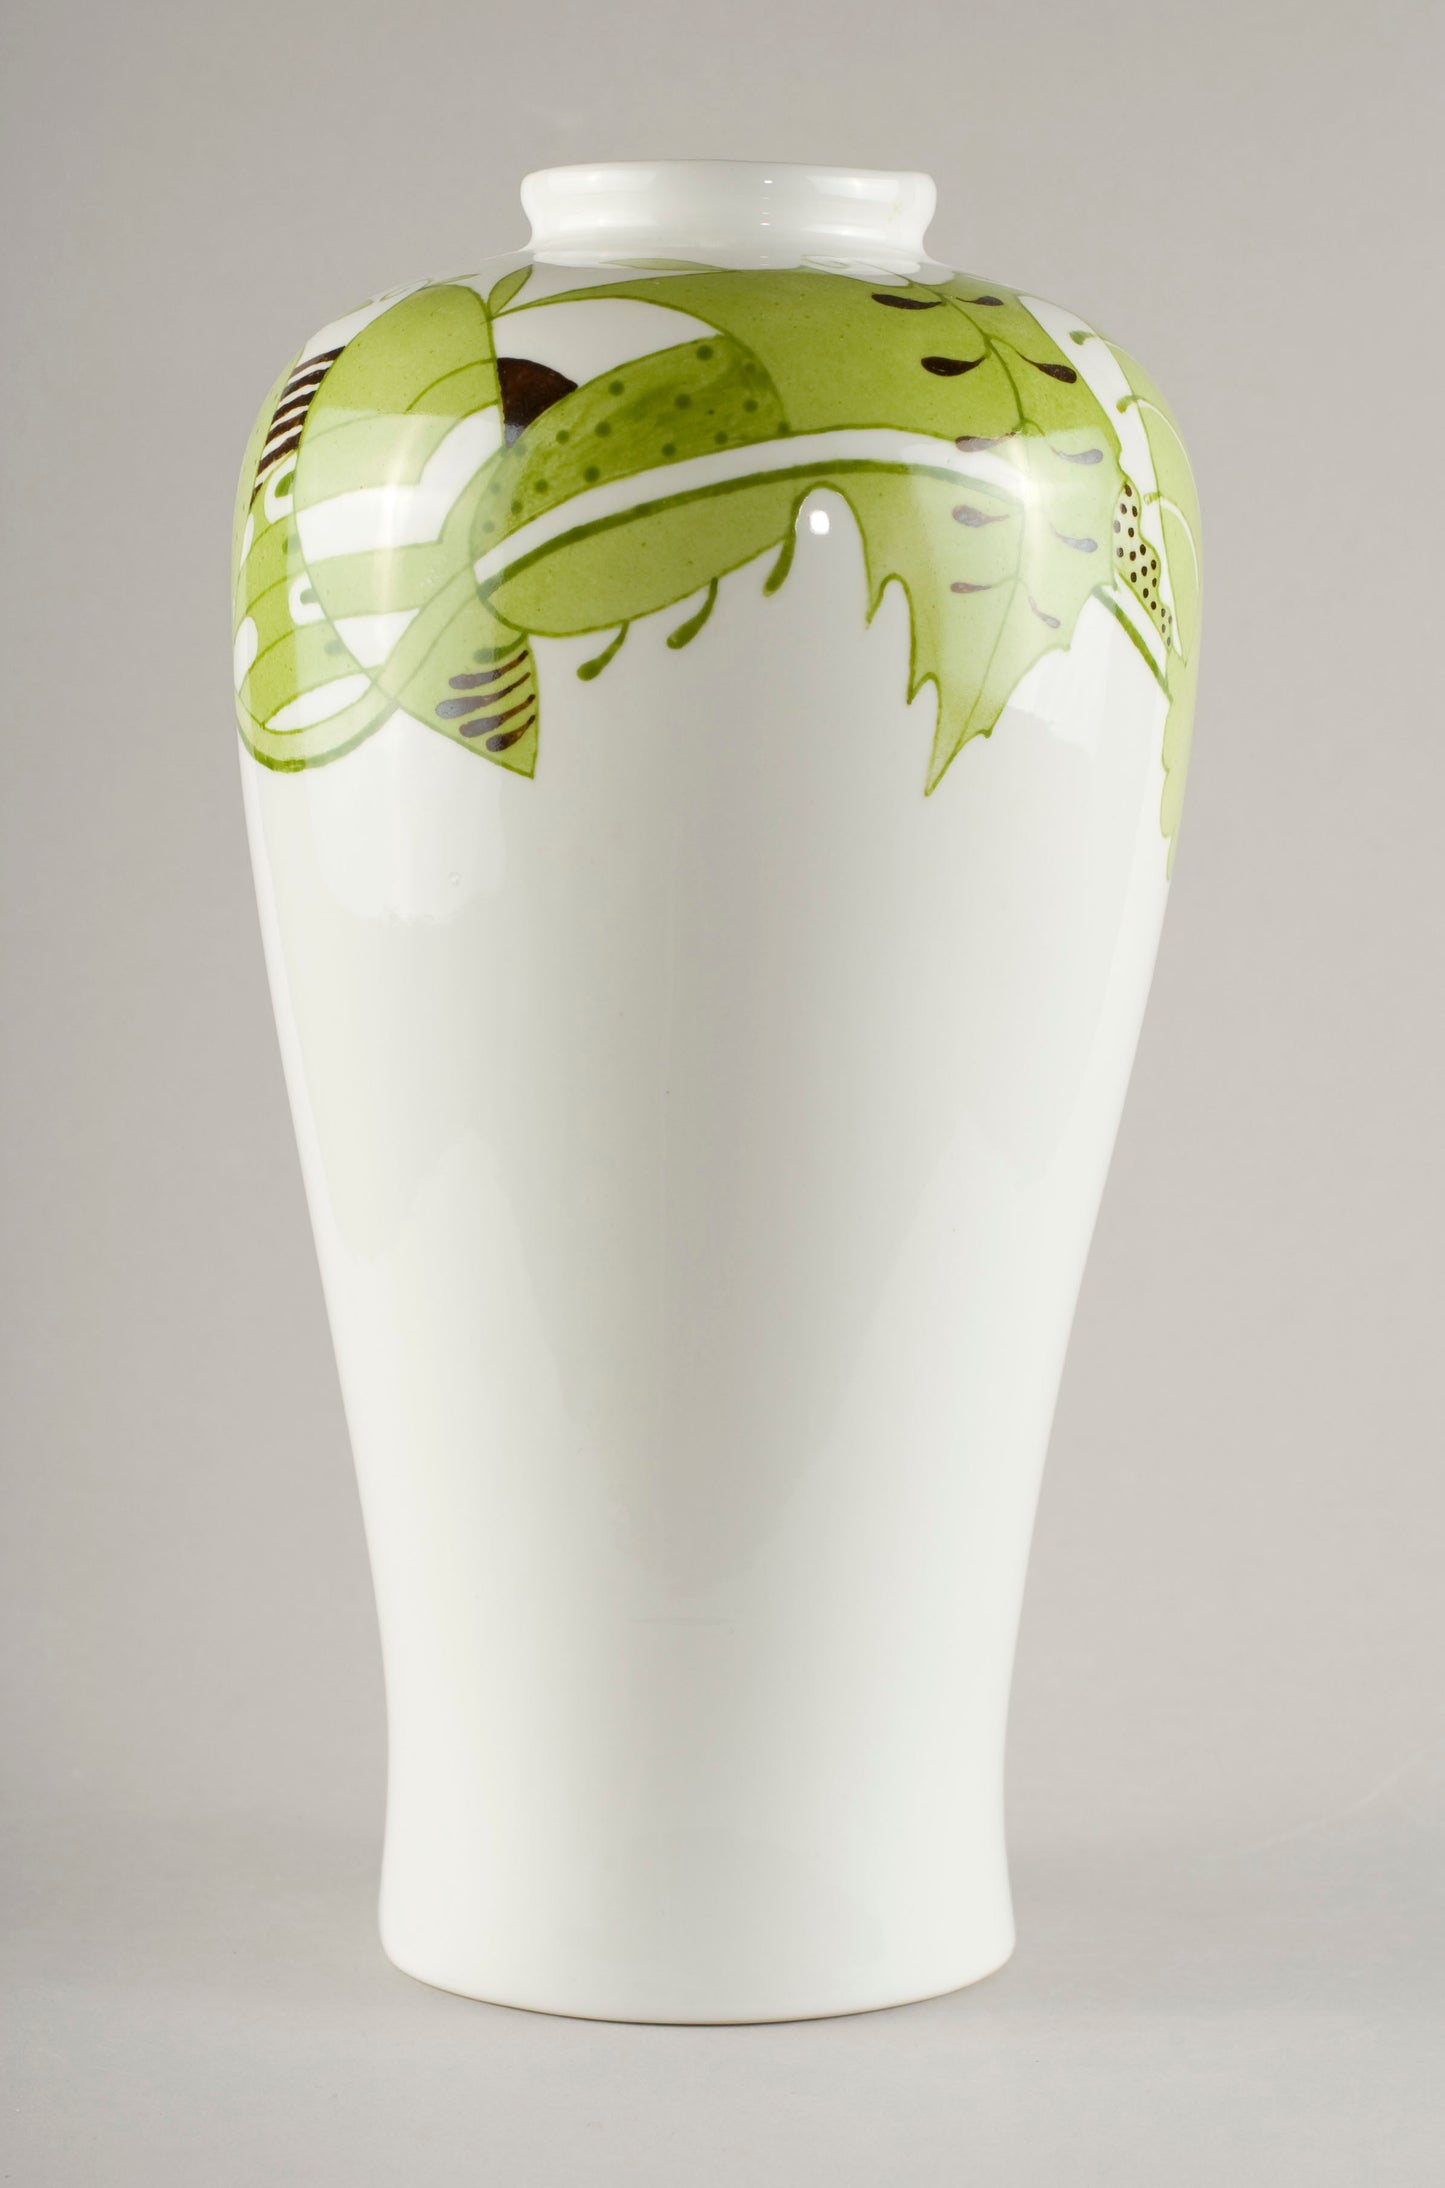 Lūse 5.8. Vase Large classic